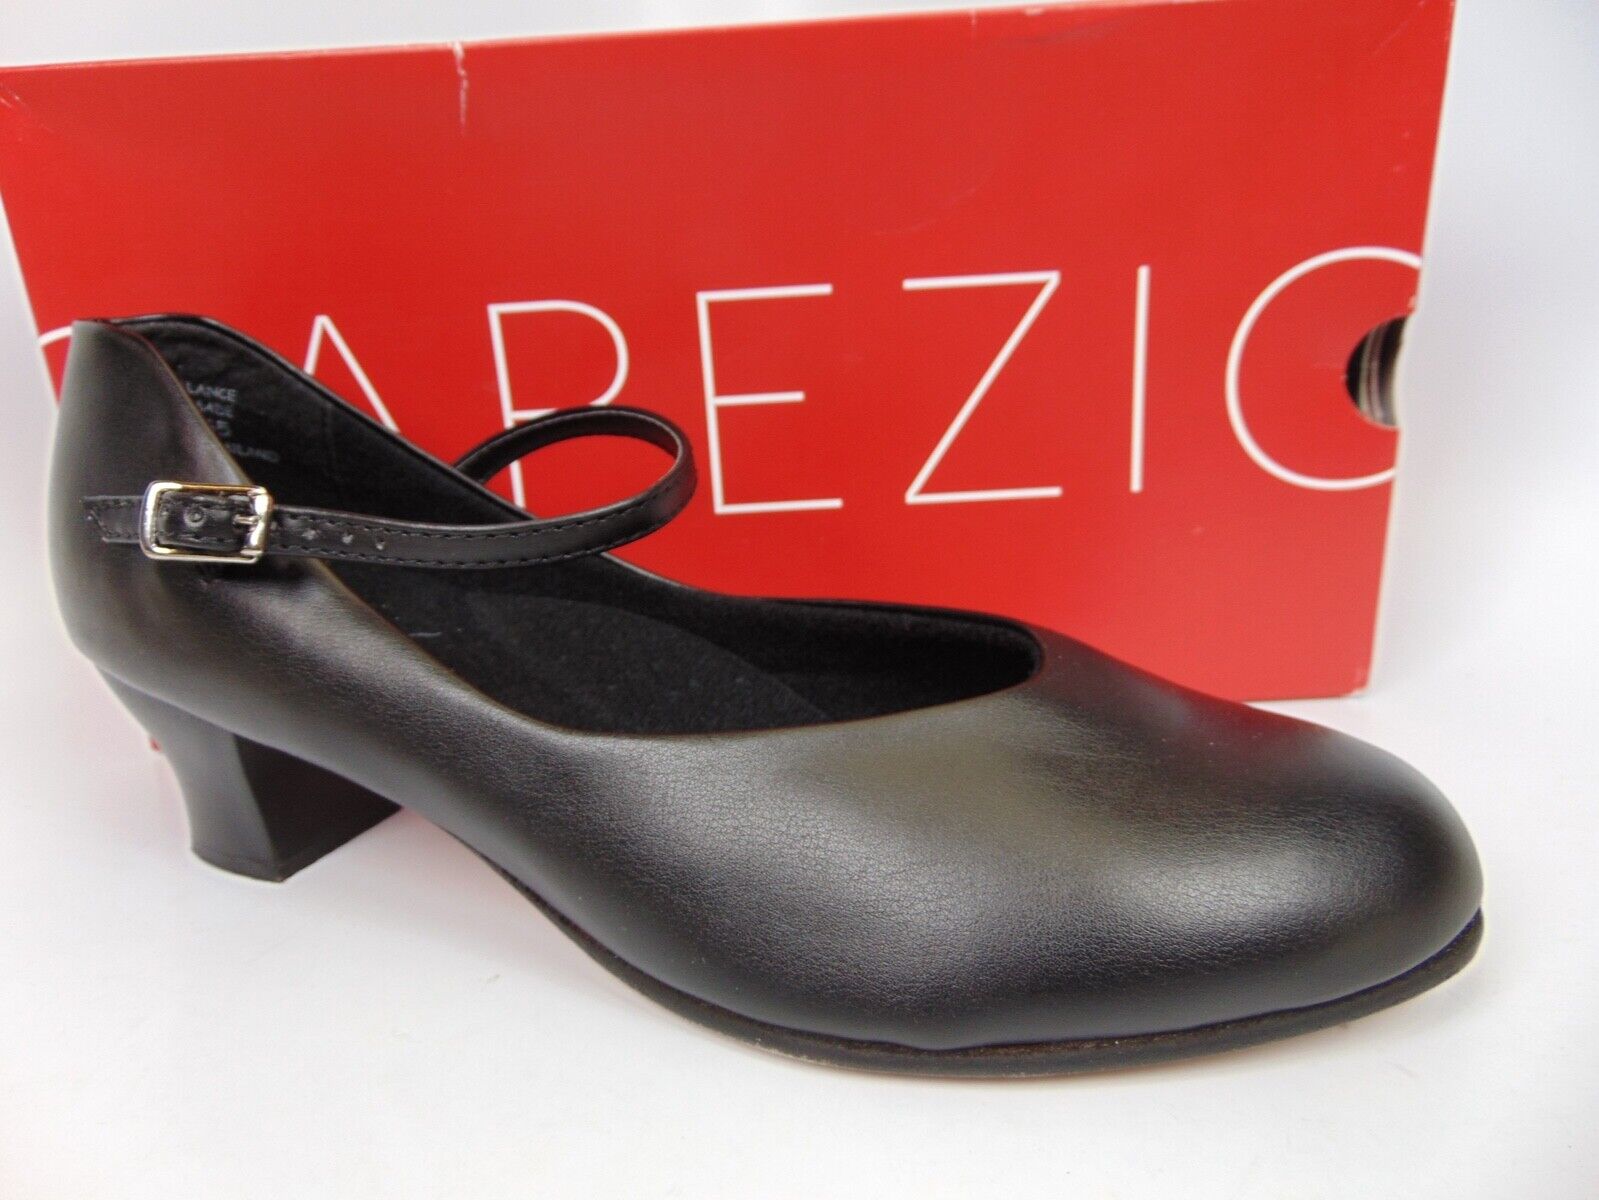 Capezio Tap Jr Footlight 550 Women's Dance Shoes Mary Jane Size 8.5 M, Black New